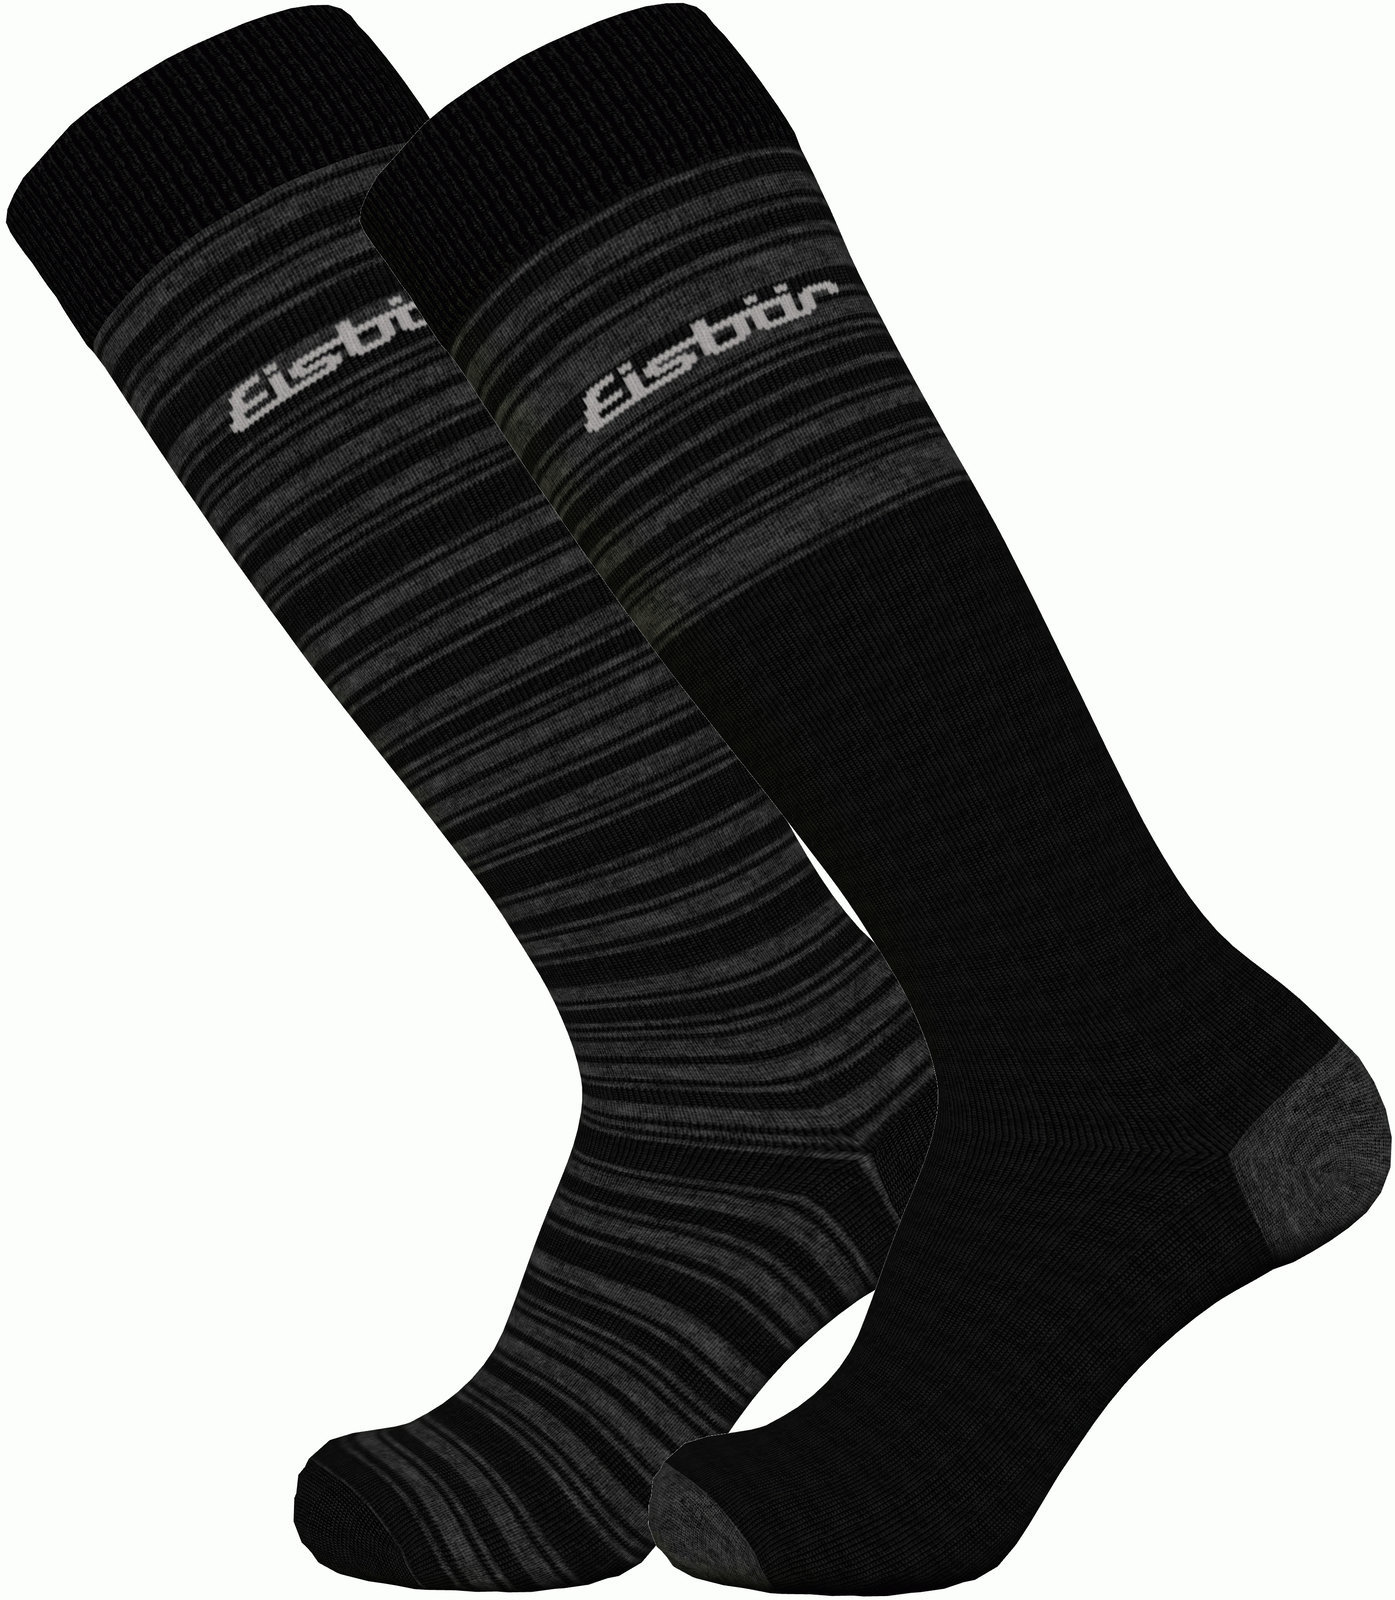 Ski Socks Eisbär Ski Comfort 2 Pack Black/Grey 39-42